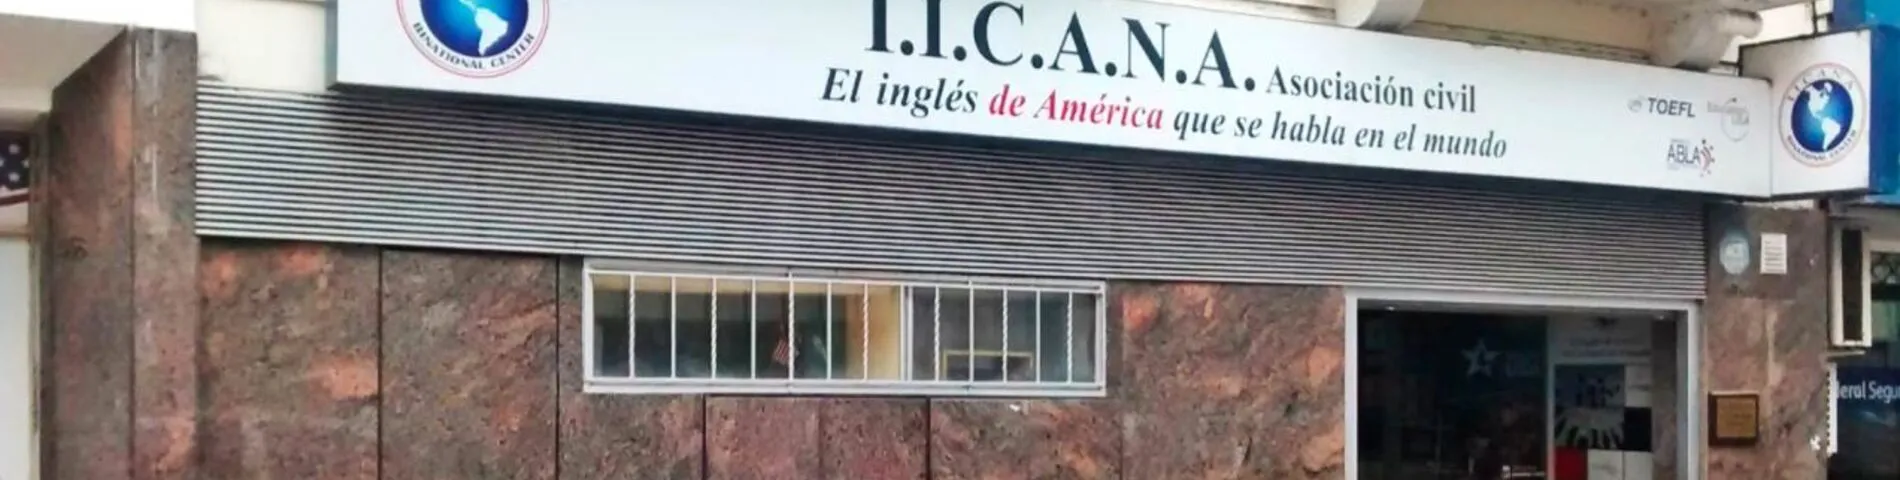 IICANA - Instituto de Intercambio Cultural Argentino Norteamericano billede 1